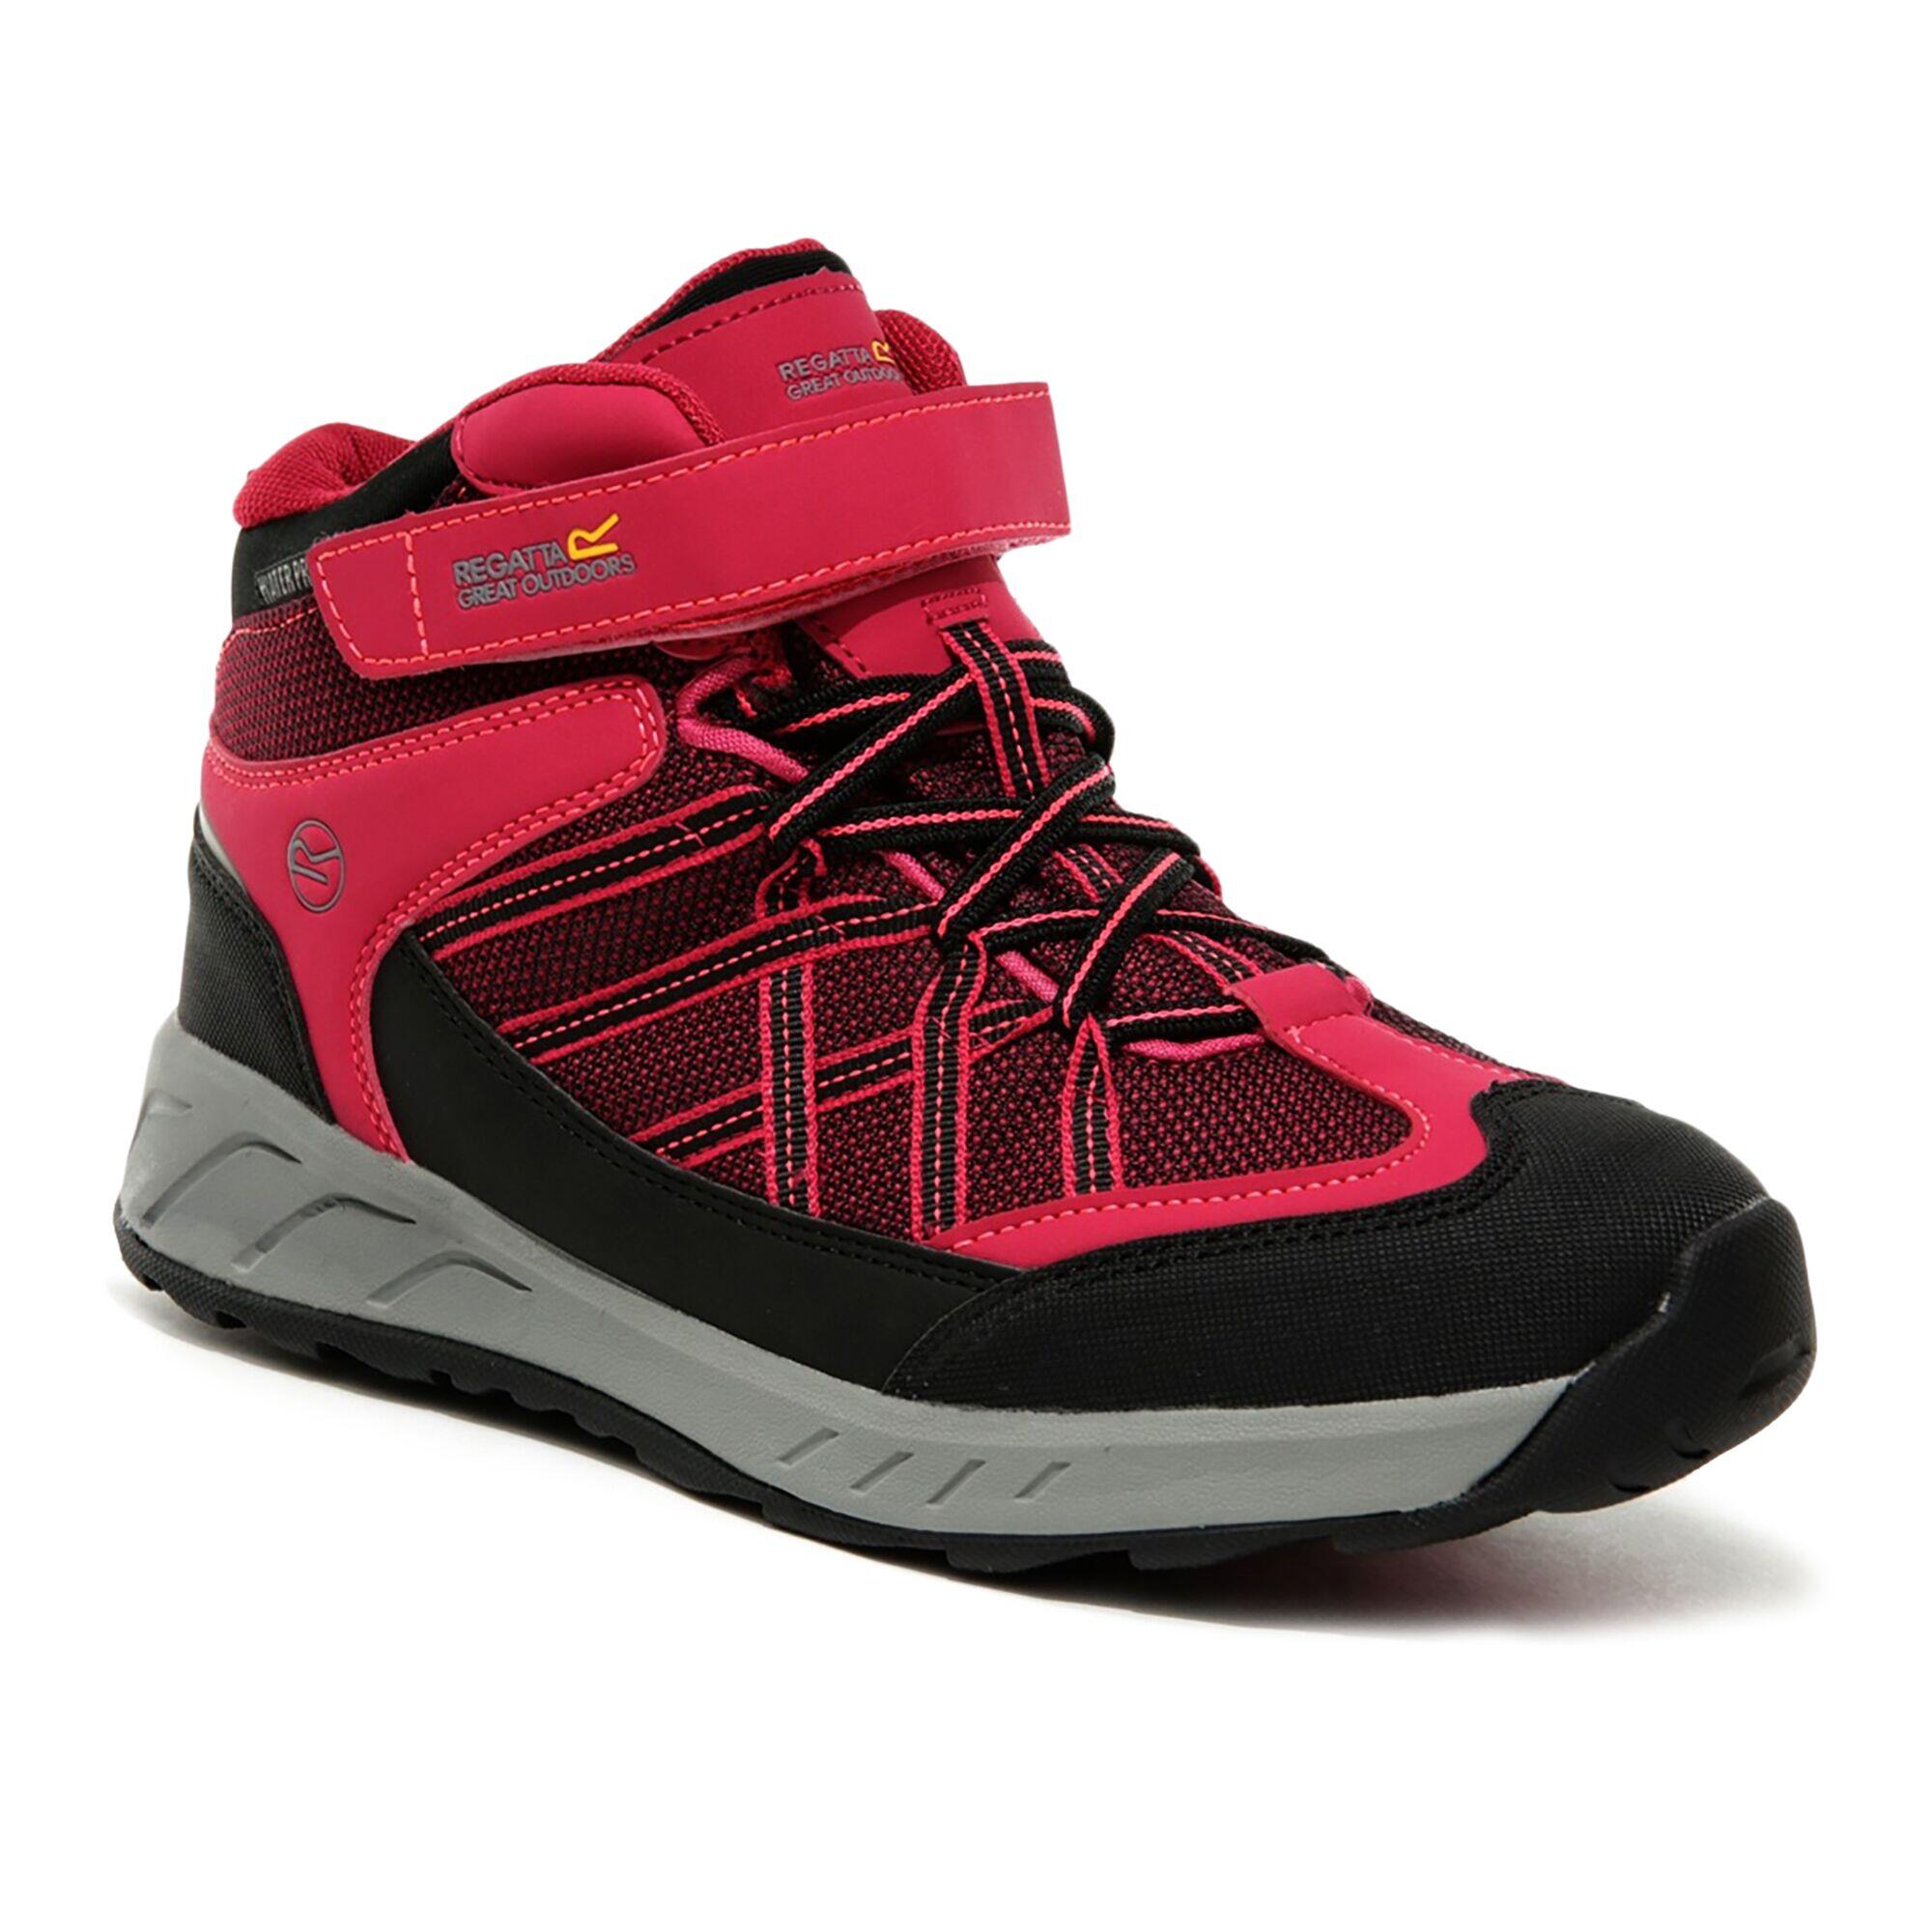 REGATTA Samaris V Kids' Hiking Waterproof Mid Boots - Cerise/Neon Pink